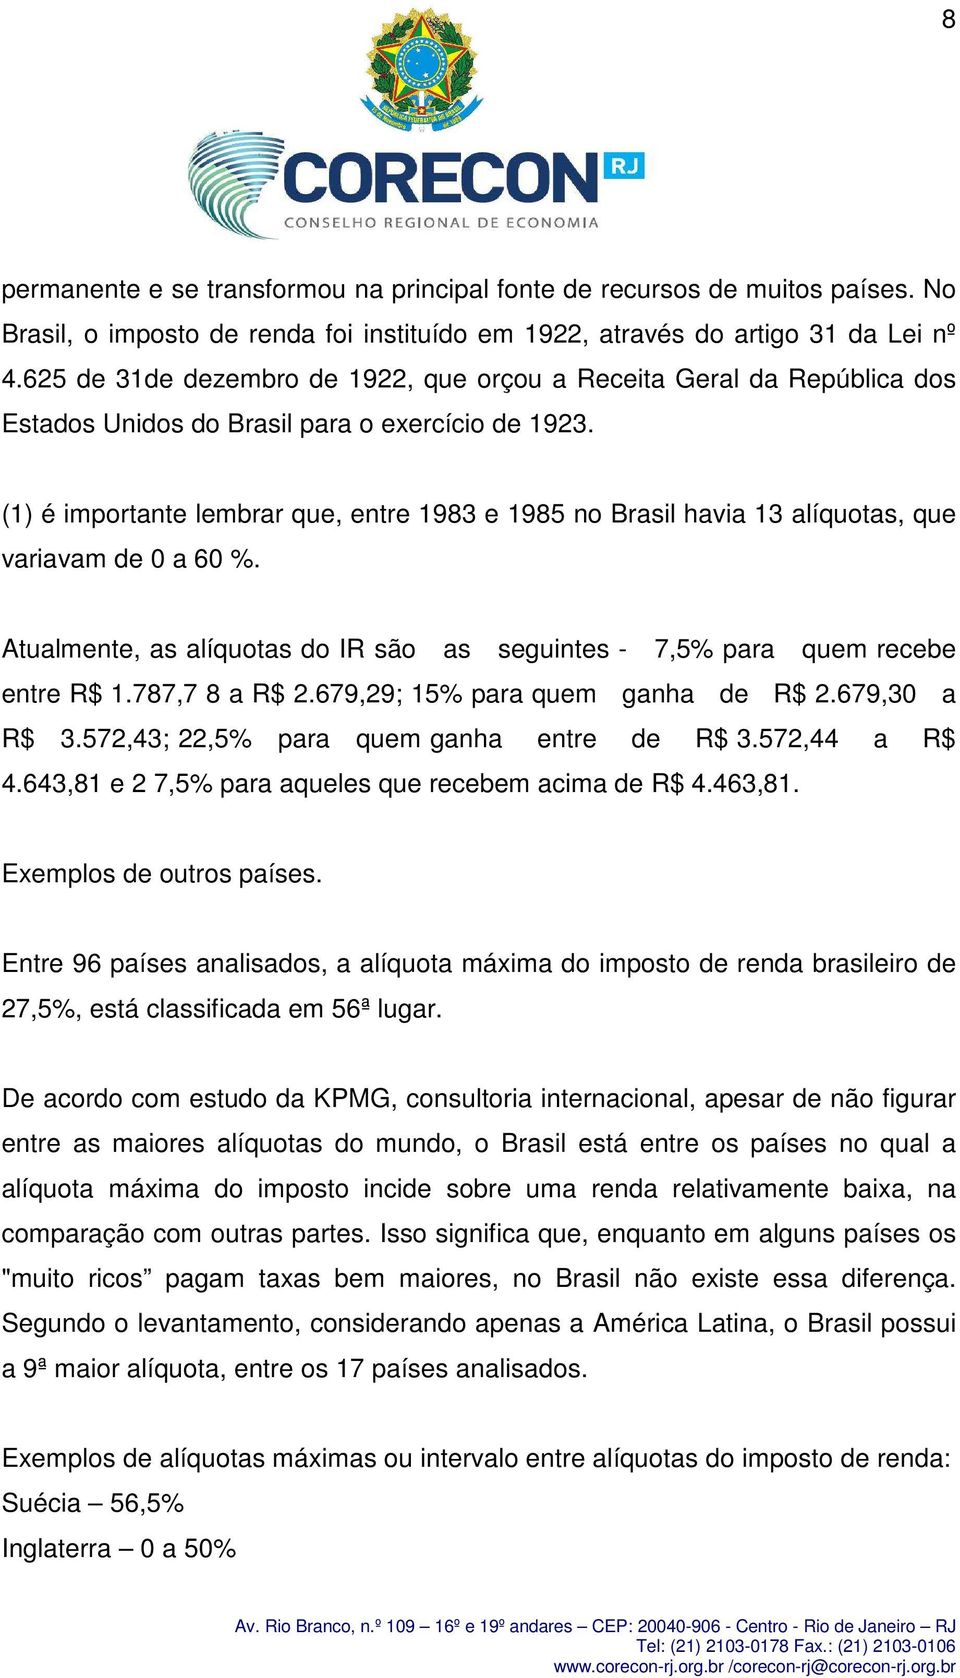 (1) é importante lembrar que, entre 1983 e 1985 no Brasil havia 13 alíquotas, que variavam de 0 a 60 %. Atualmente, as alíquotas do IR são as seguintes - 7,5% para quem recebe entre R$ 1.